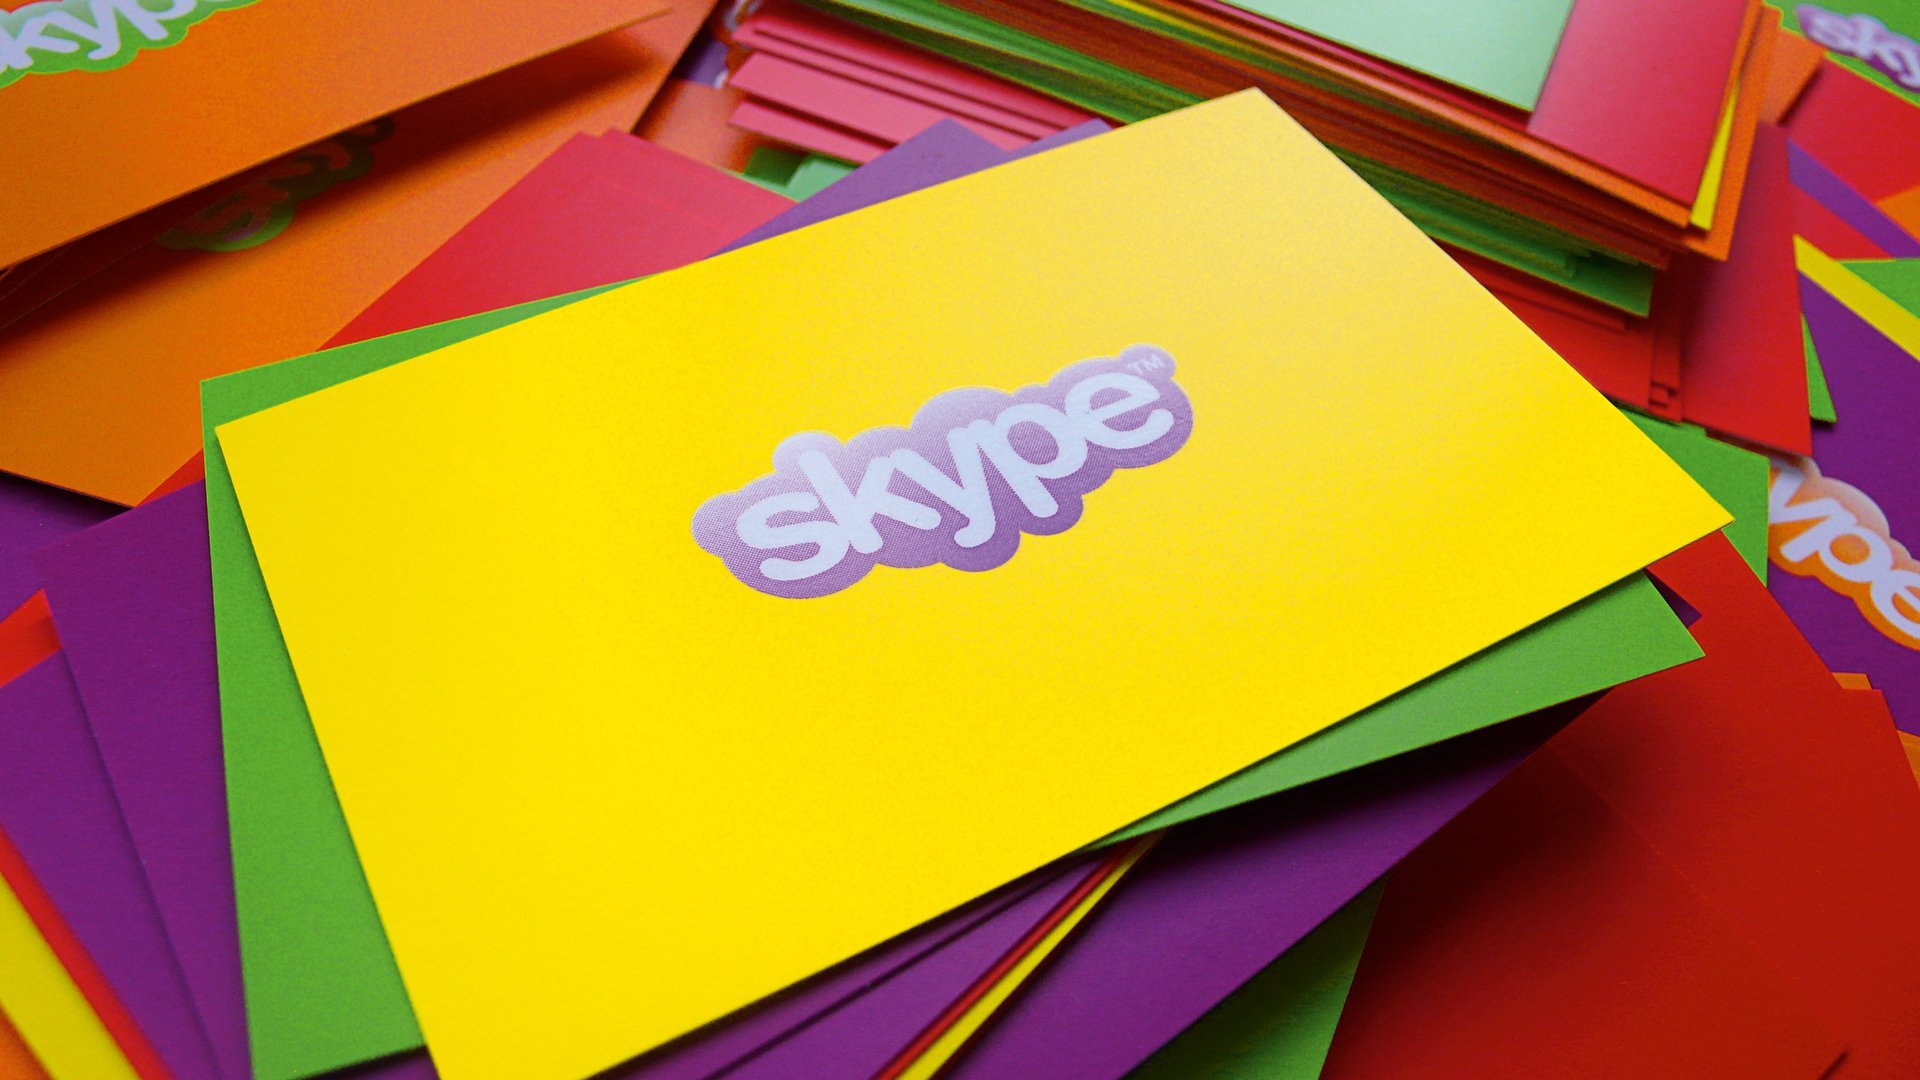 Skype business cards by LOOP Associates